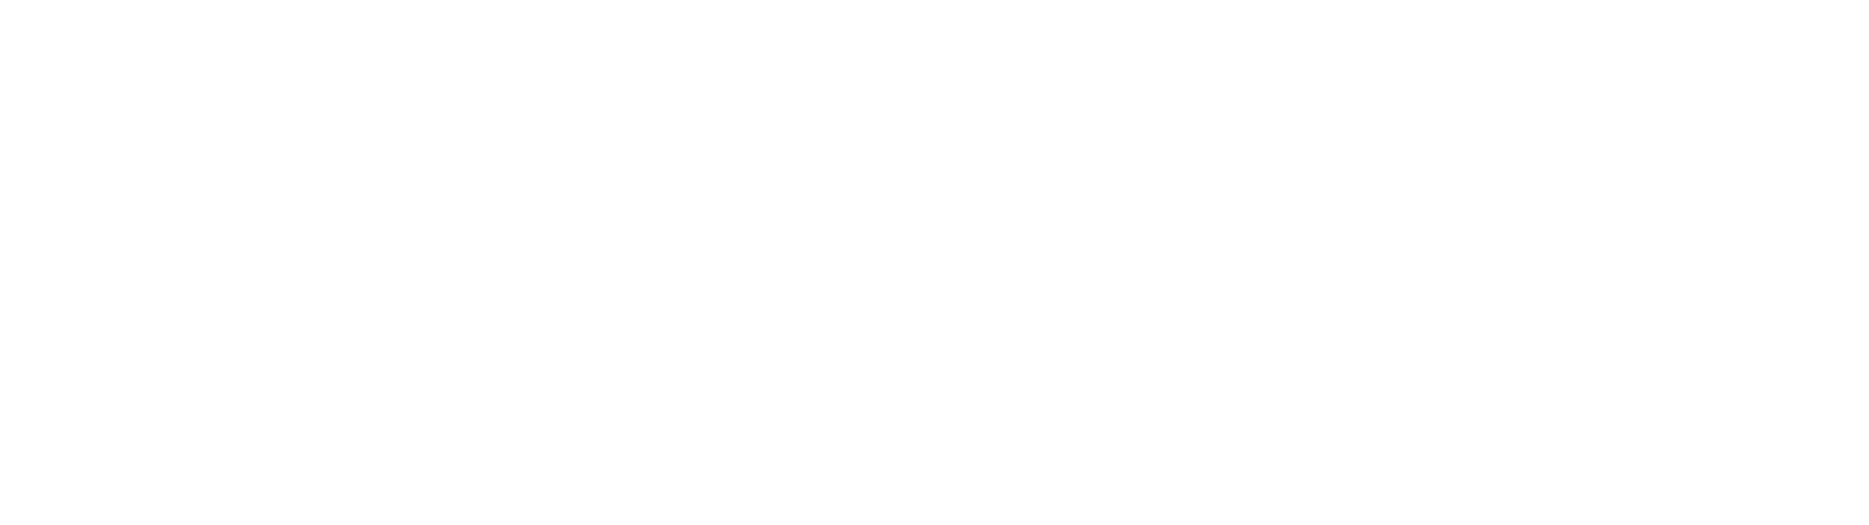 canvas-logo-white